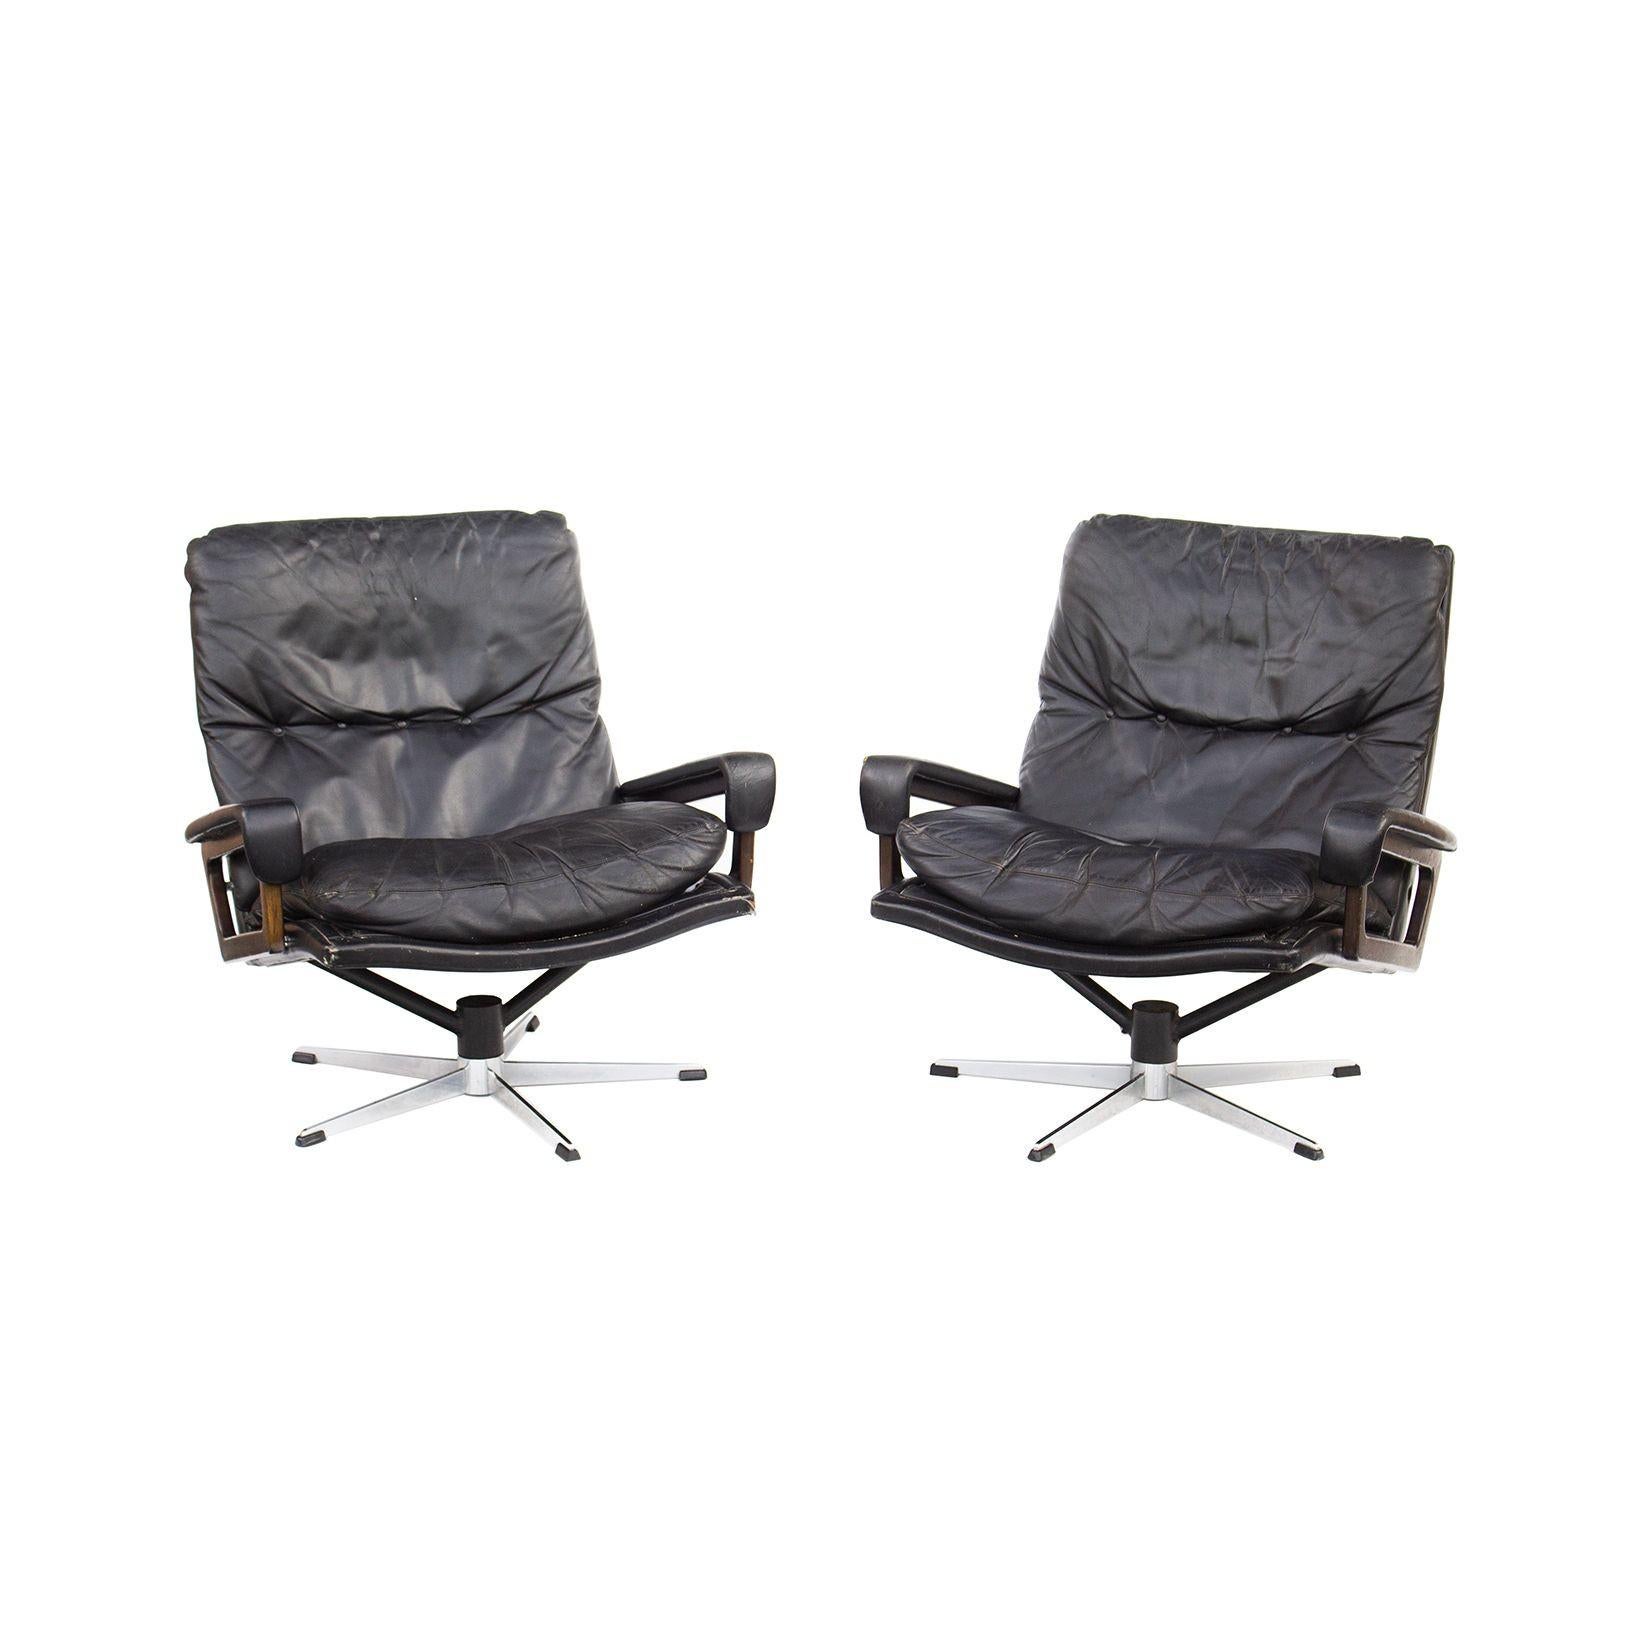 Schweiz, 1960er Jahre
Ein Paar lederne 'King Chair'-Drehsessel von Andre Vandenbeuck für Strässle Schweiz. Sie sind mit schwarzem Leder gepolstert und haben geschwungene Armlehnen aus Palisander oder Nussbaum. Die Sockel sind in Fünfpunktbauweise